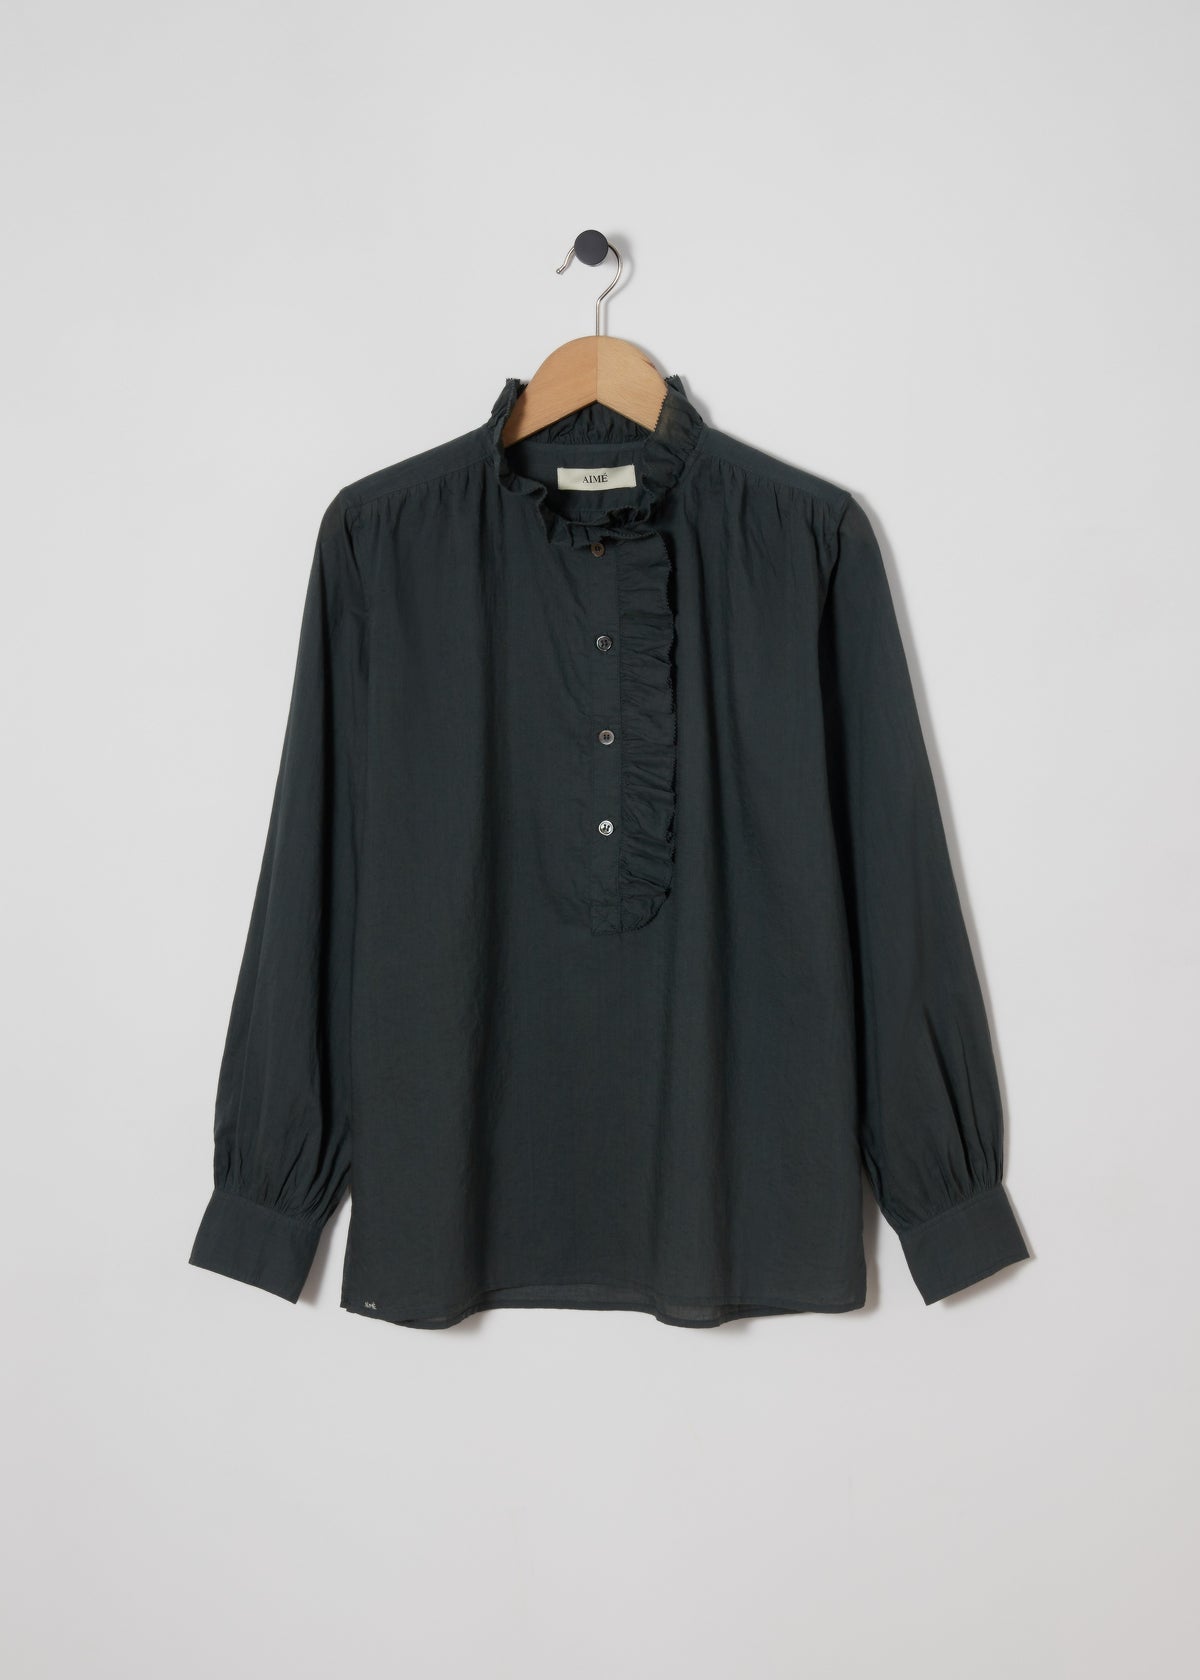 Benson Shirt, Forest Green | Aimé London